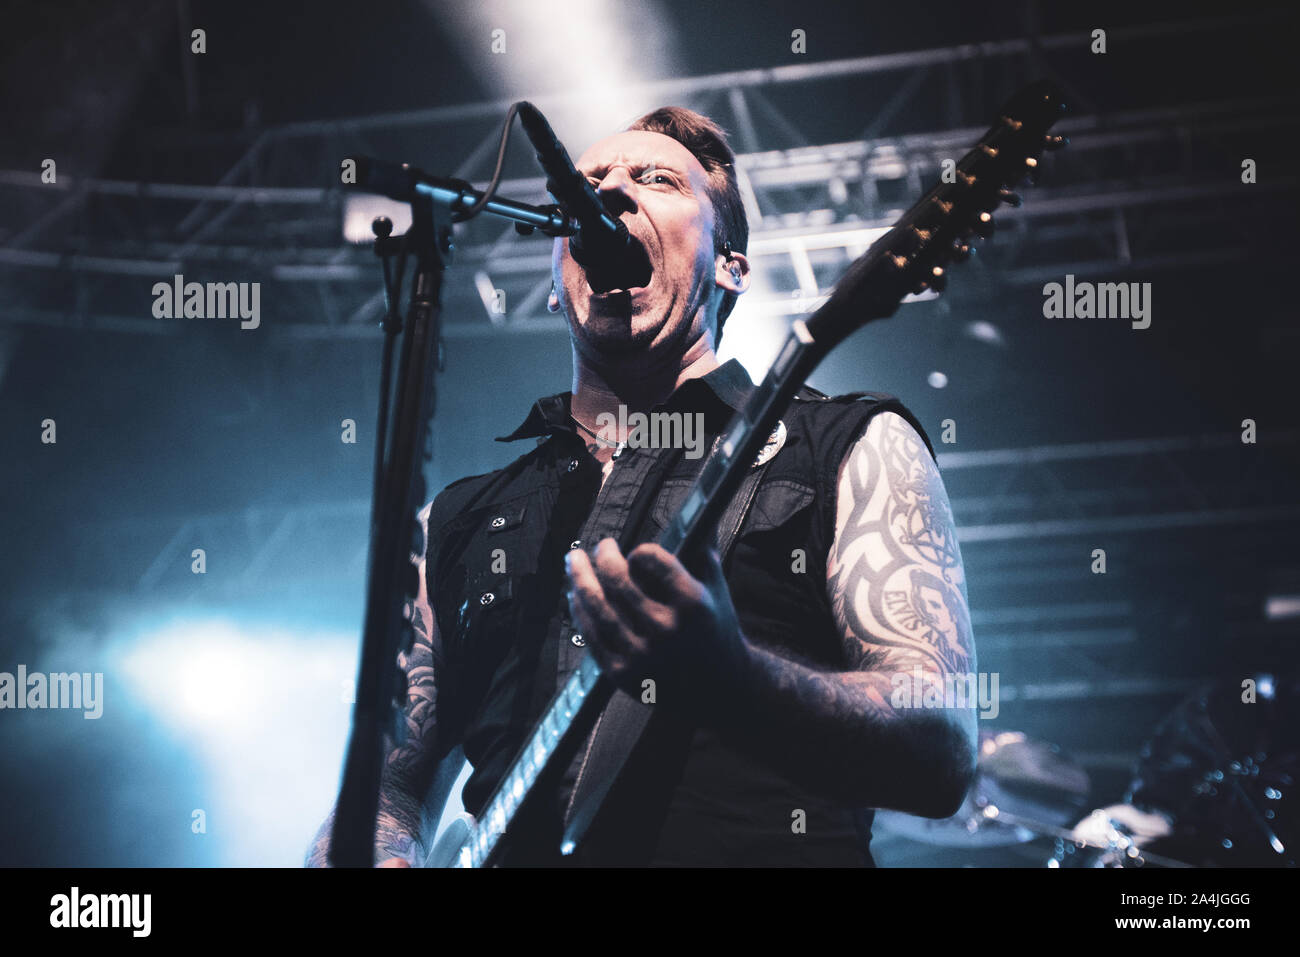 FABRIQUE, Milano, Italien - 2019/10/14: Michael Poulsen der dänischen Band Volbeat live auf der Bühne Fabrique, für das Zurückspulen Replay Reboud band Tour 2019 Stockfoto